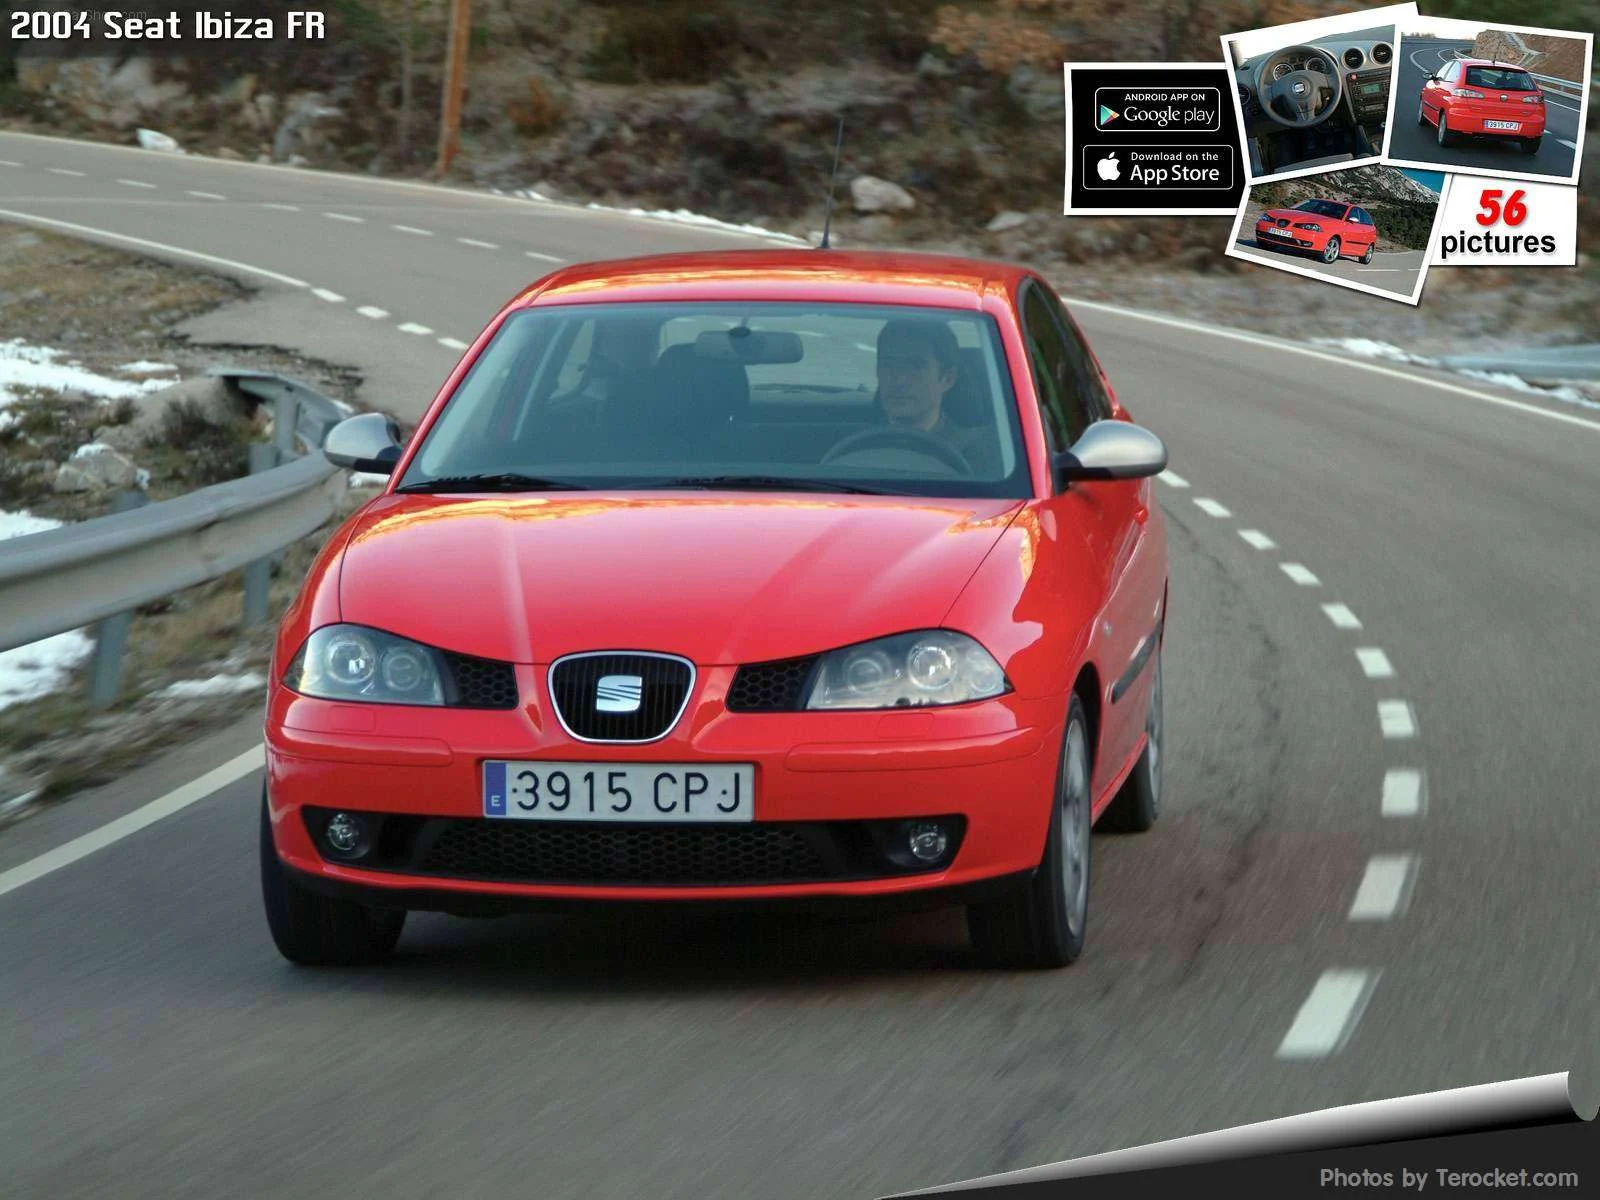 Hình ảnh xe ô tô Seat Ibiza FR 2004 & nội ngoại thất